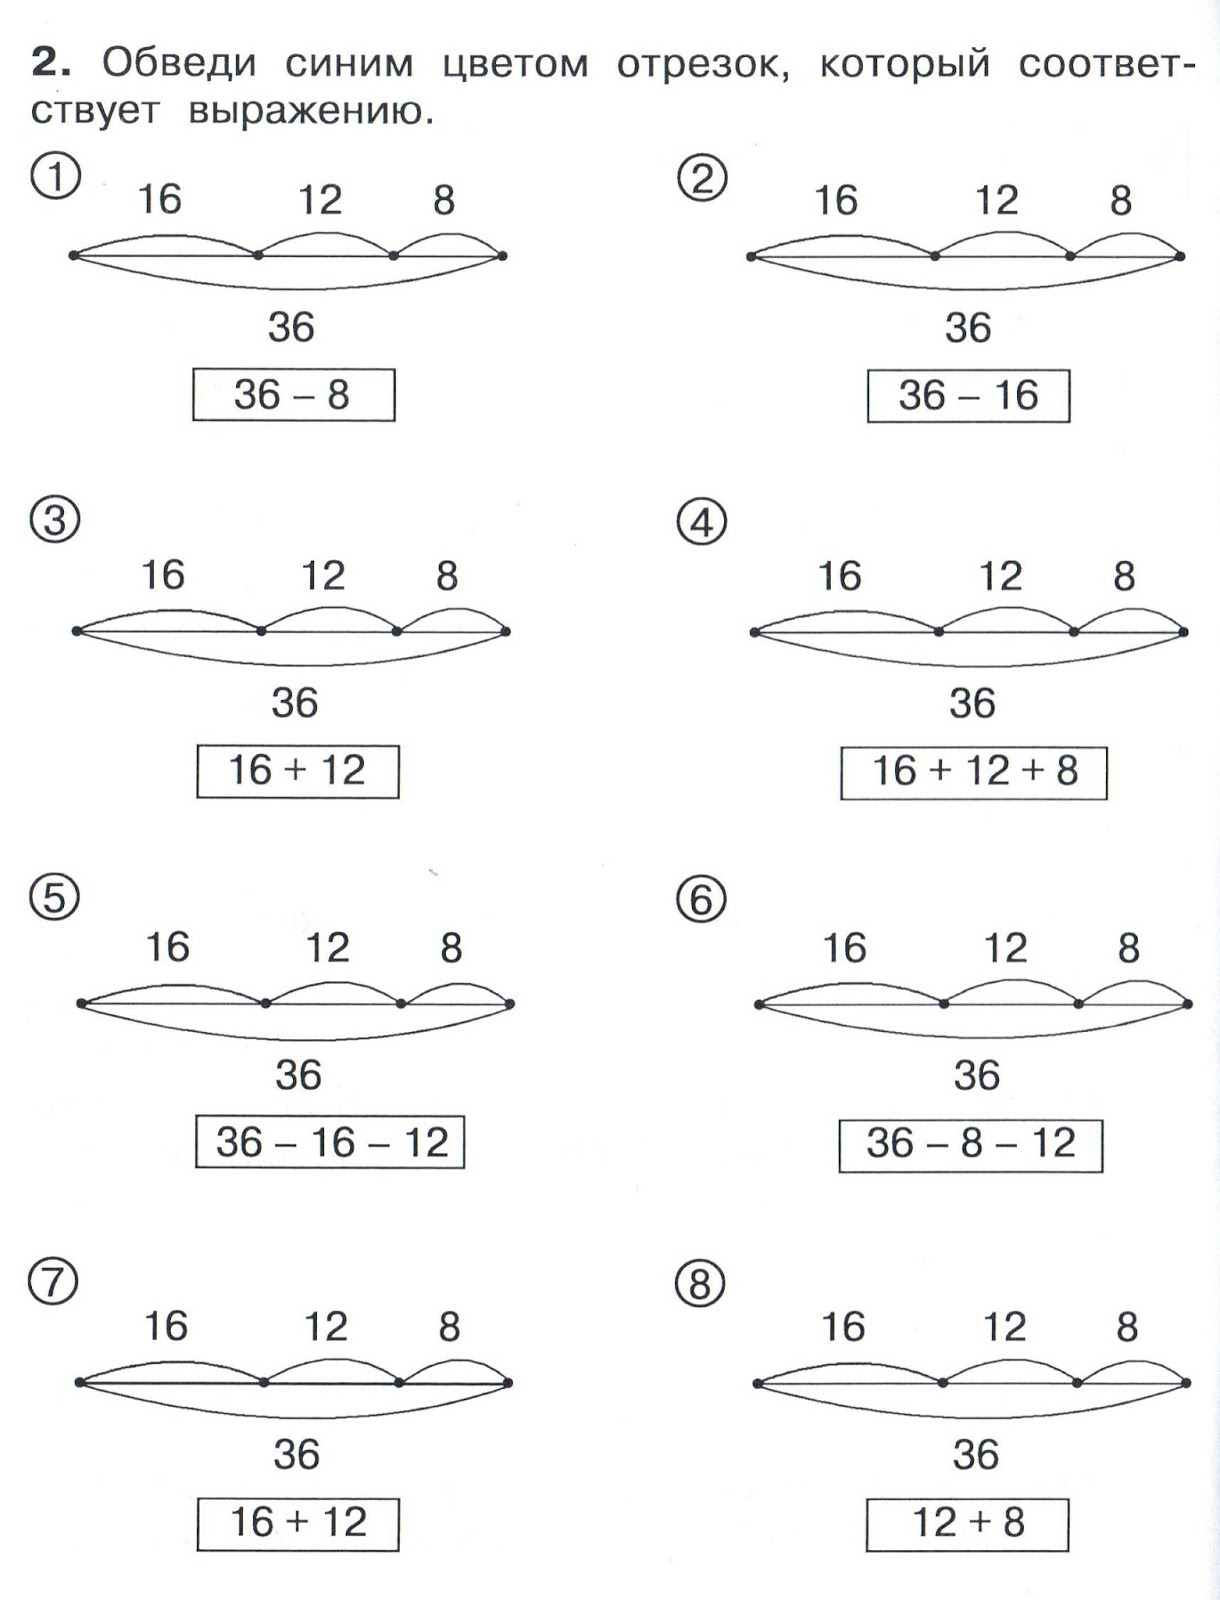 Как делать второе задание. Задачи для 1 класса по математике Петерсон со схемами. Задачи по математике 3 класс схематический чертеж к задаче. Математика 1 класс задачи Петерсон 3 часть со схемами. Схемы к задачам на умножение 2 класс Петерсон.